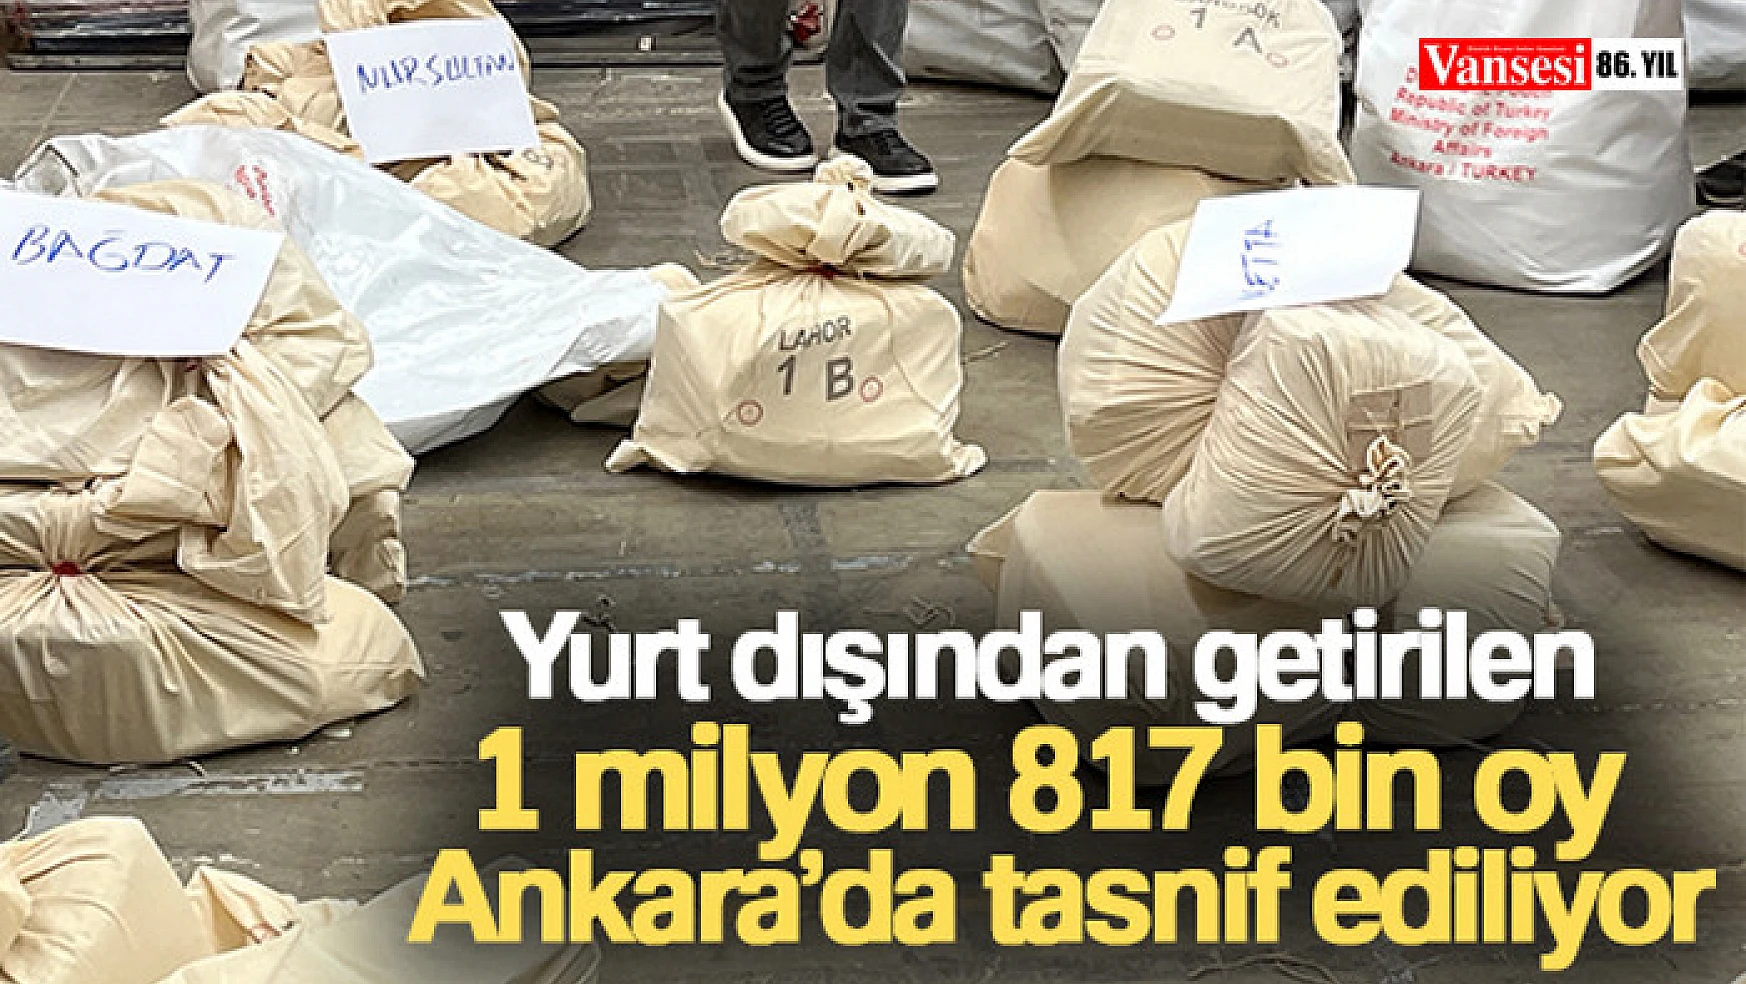 Yurt dışından getirilen 1 milyon 817 bin oy Ankara'da tasnif ediliyor